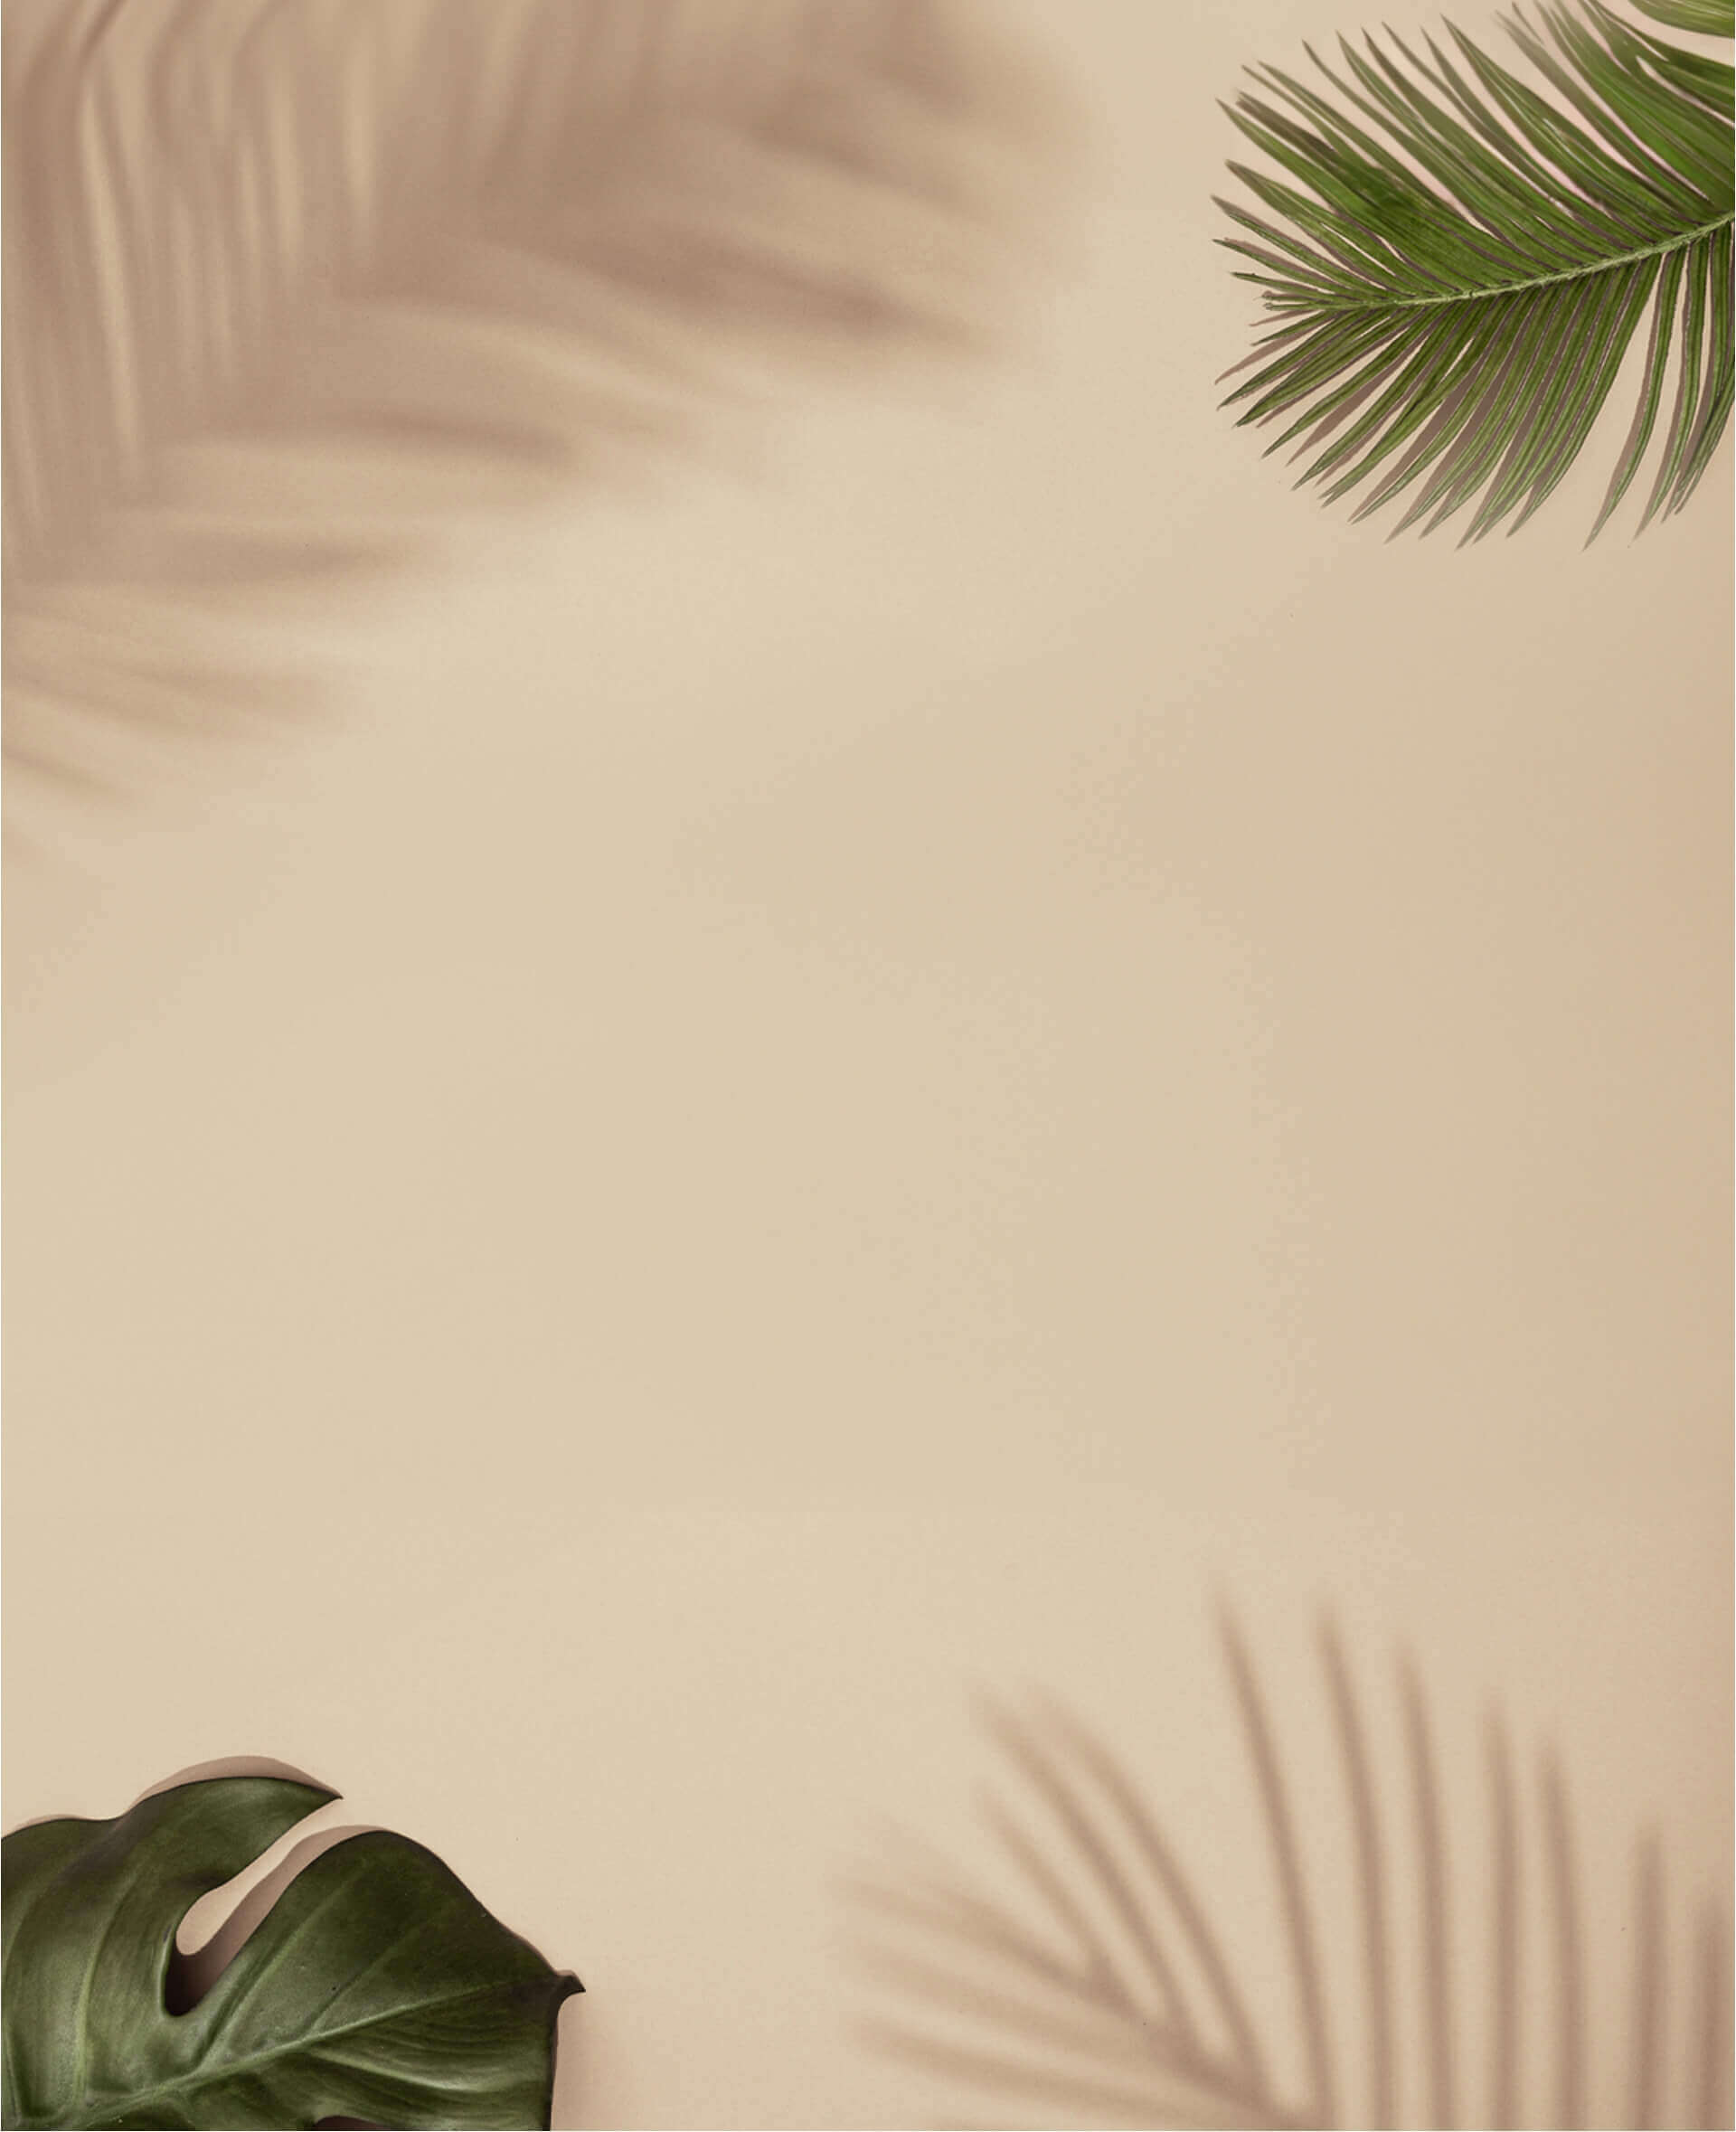 Image of aleaf in a beige color background